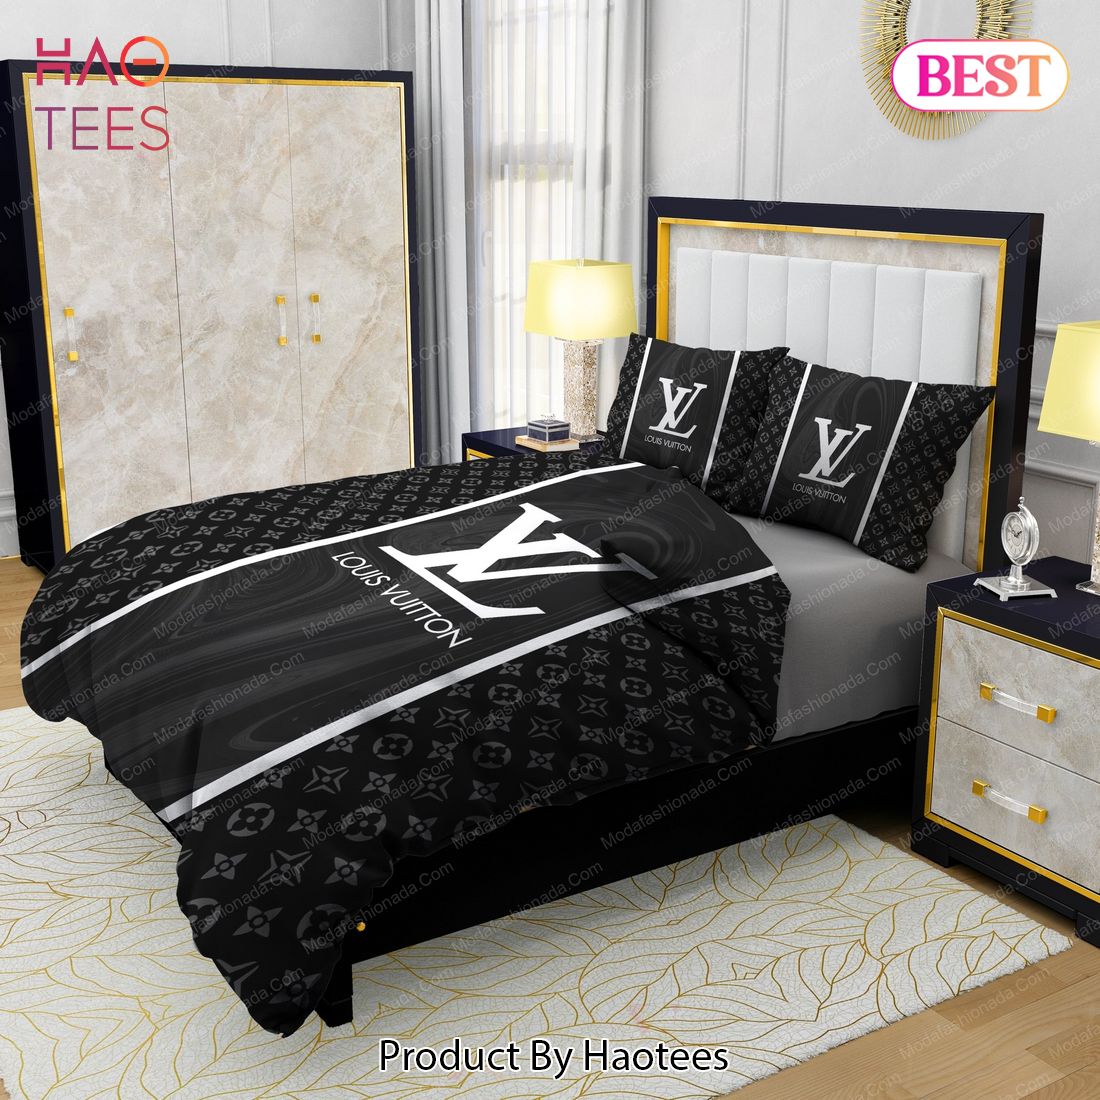 Black Veinstone Louis Vuitton Bedding Sets Bed Sets, Bedroom Sets